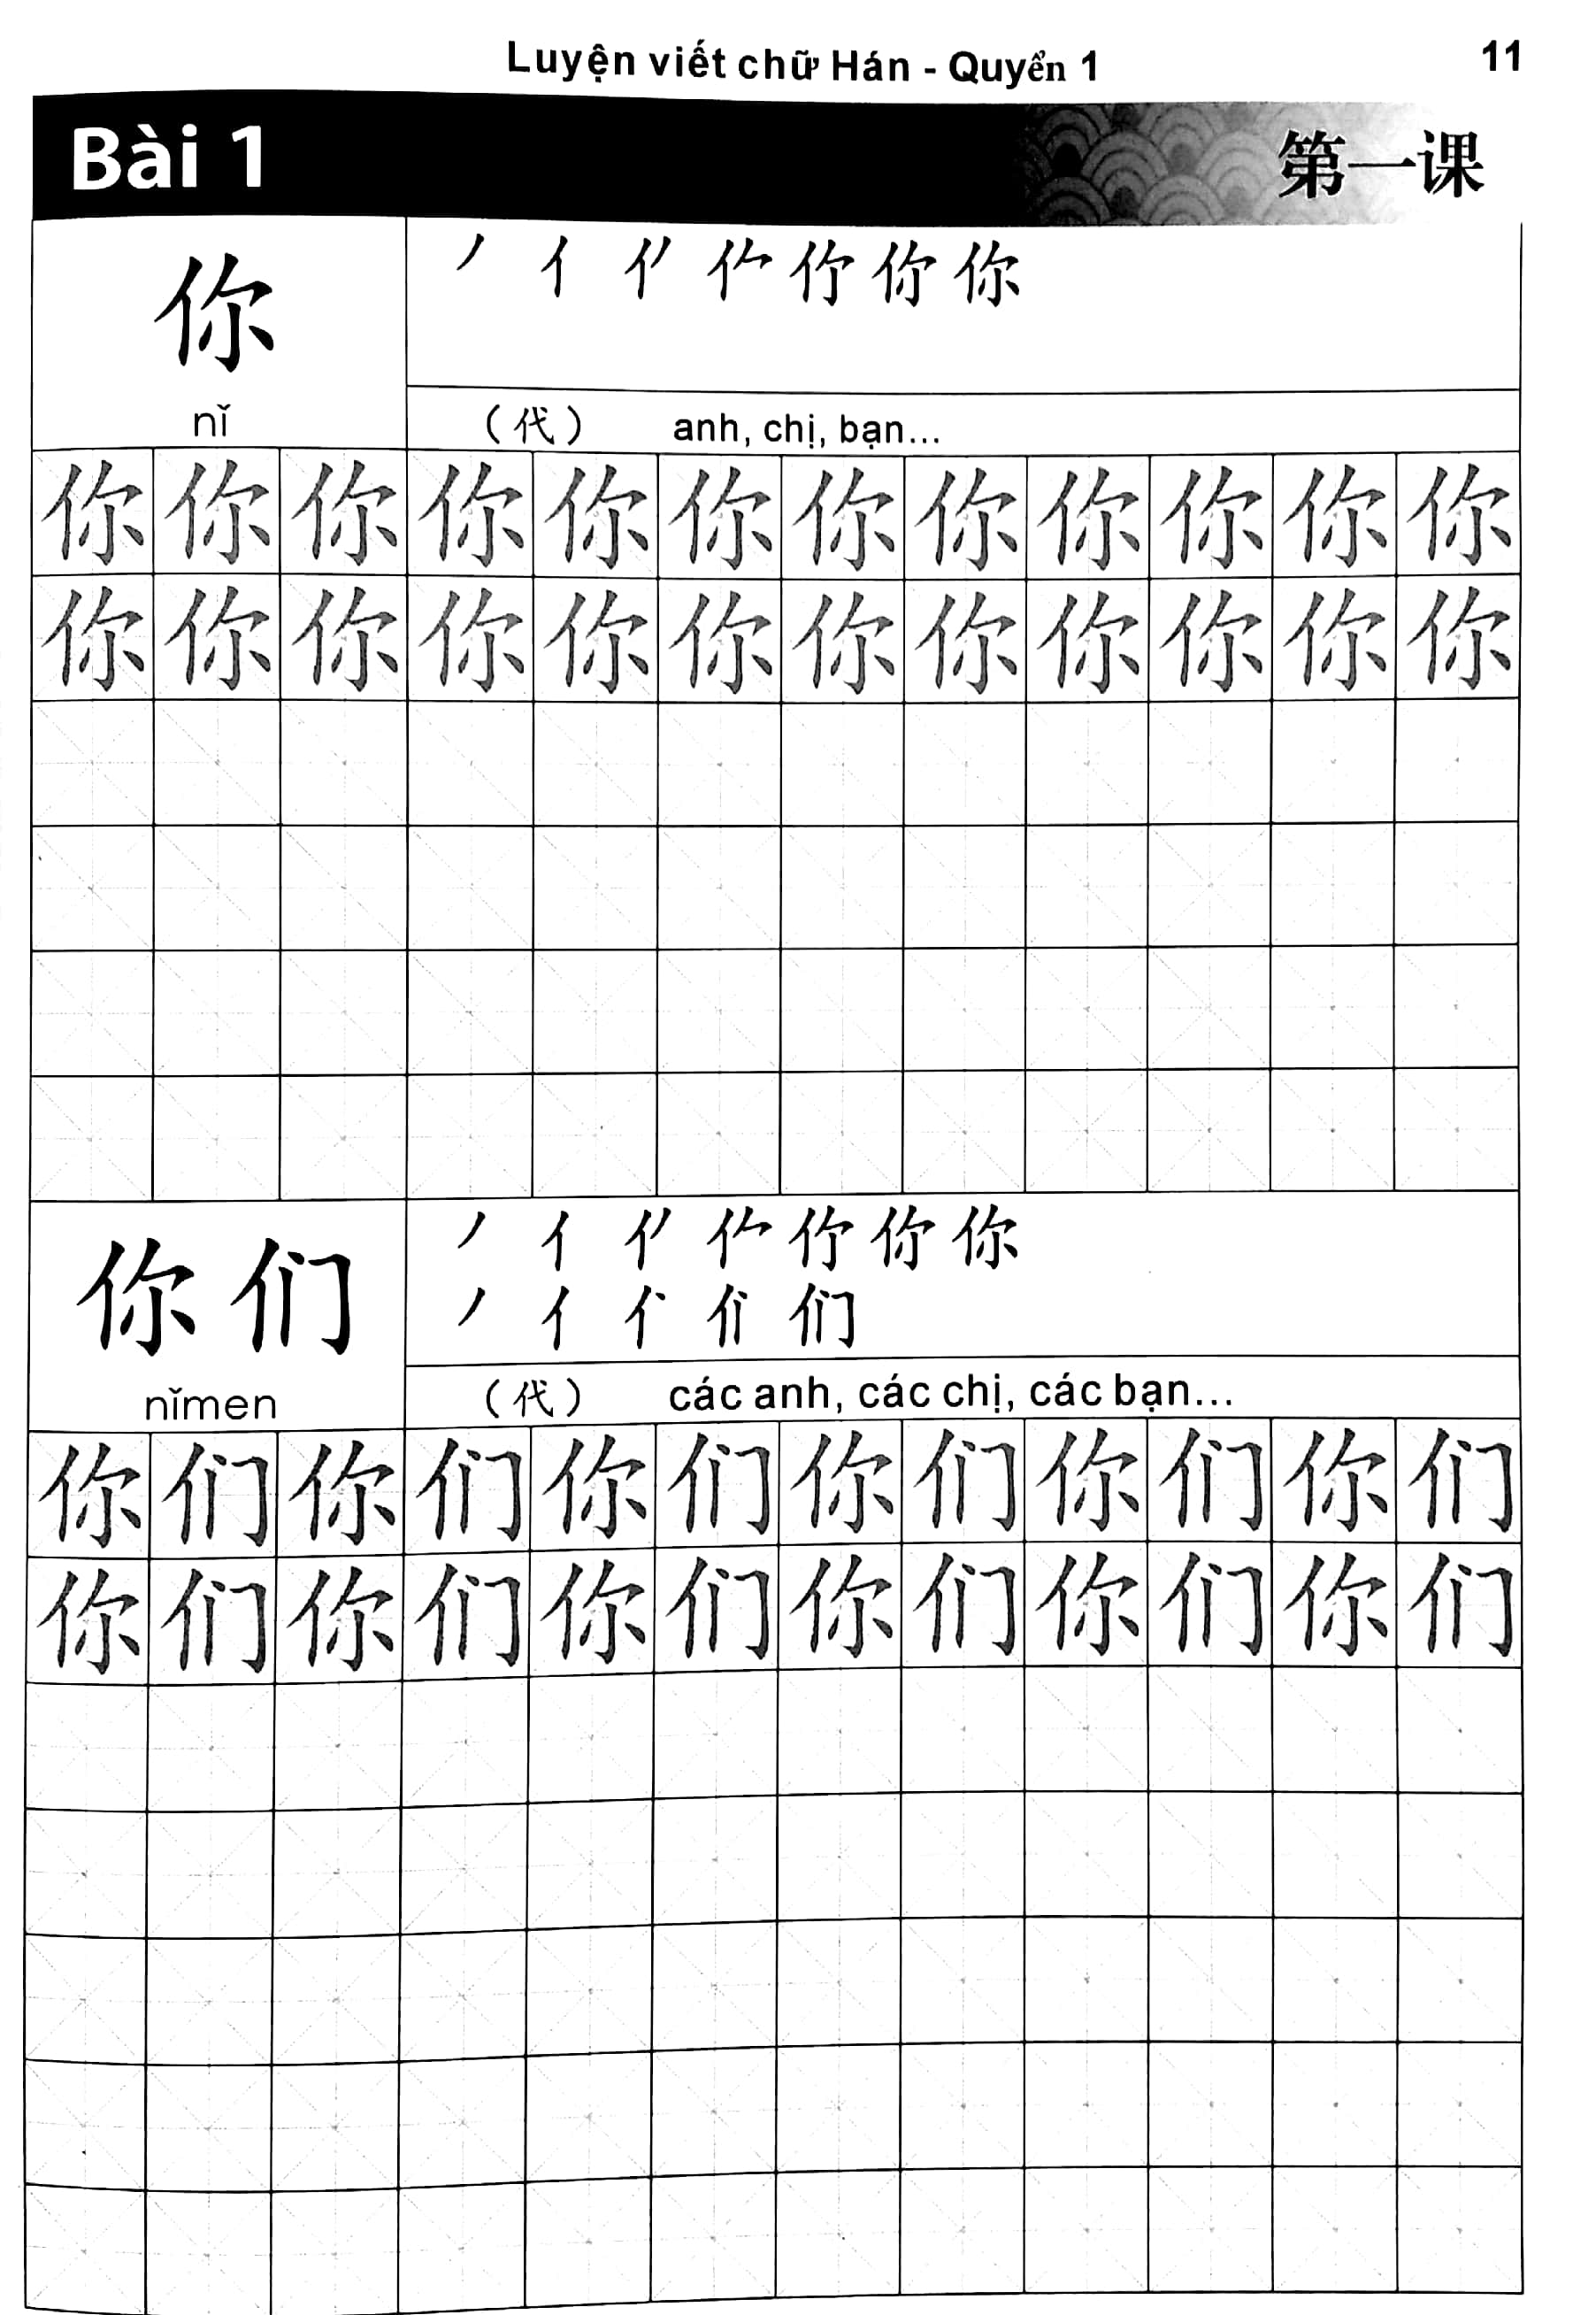 Luyện Viết Chữ Hán - Tập 1 PDF